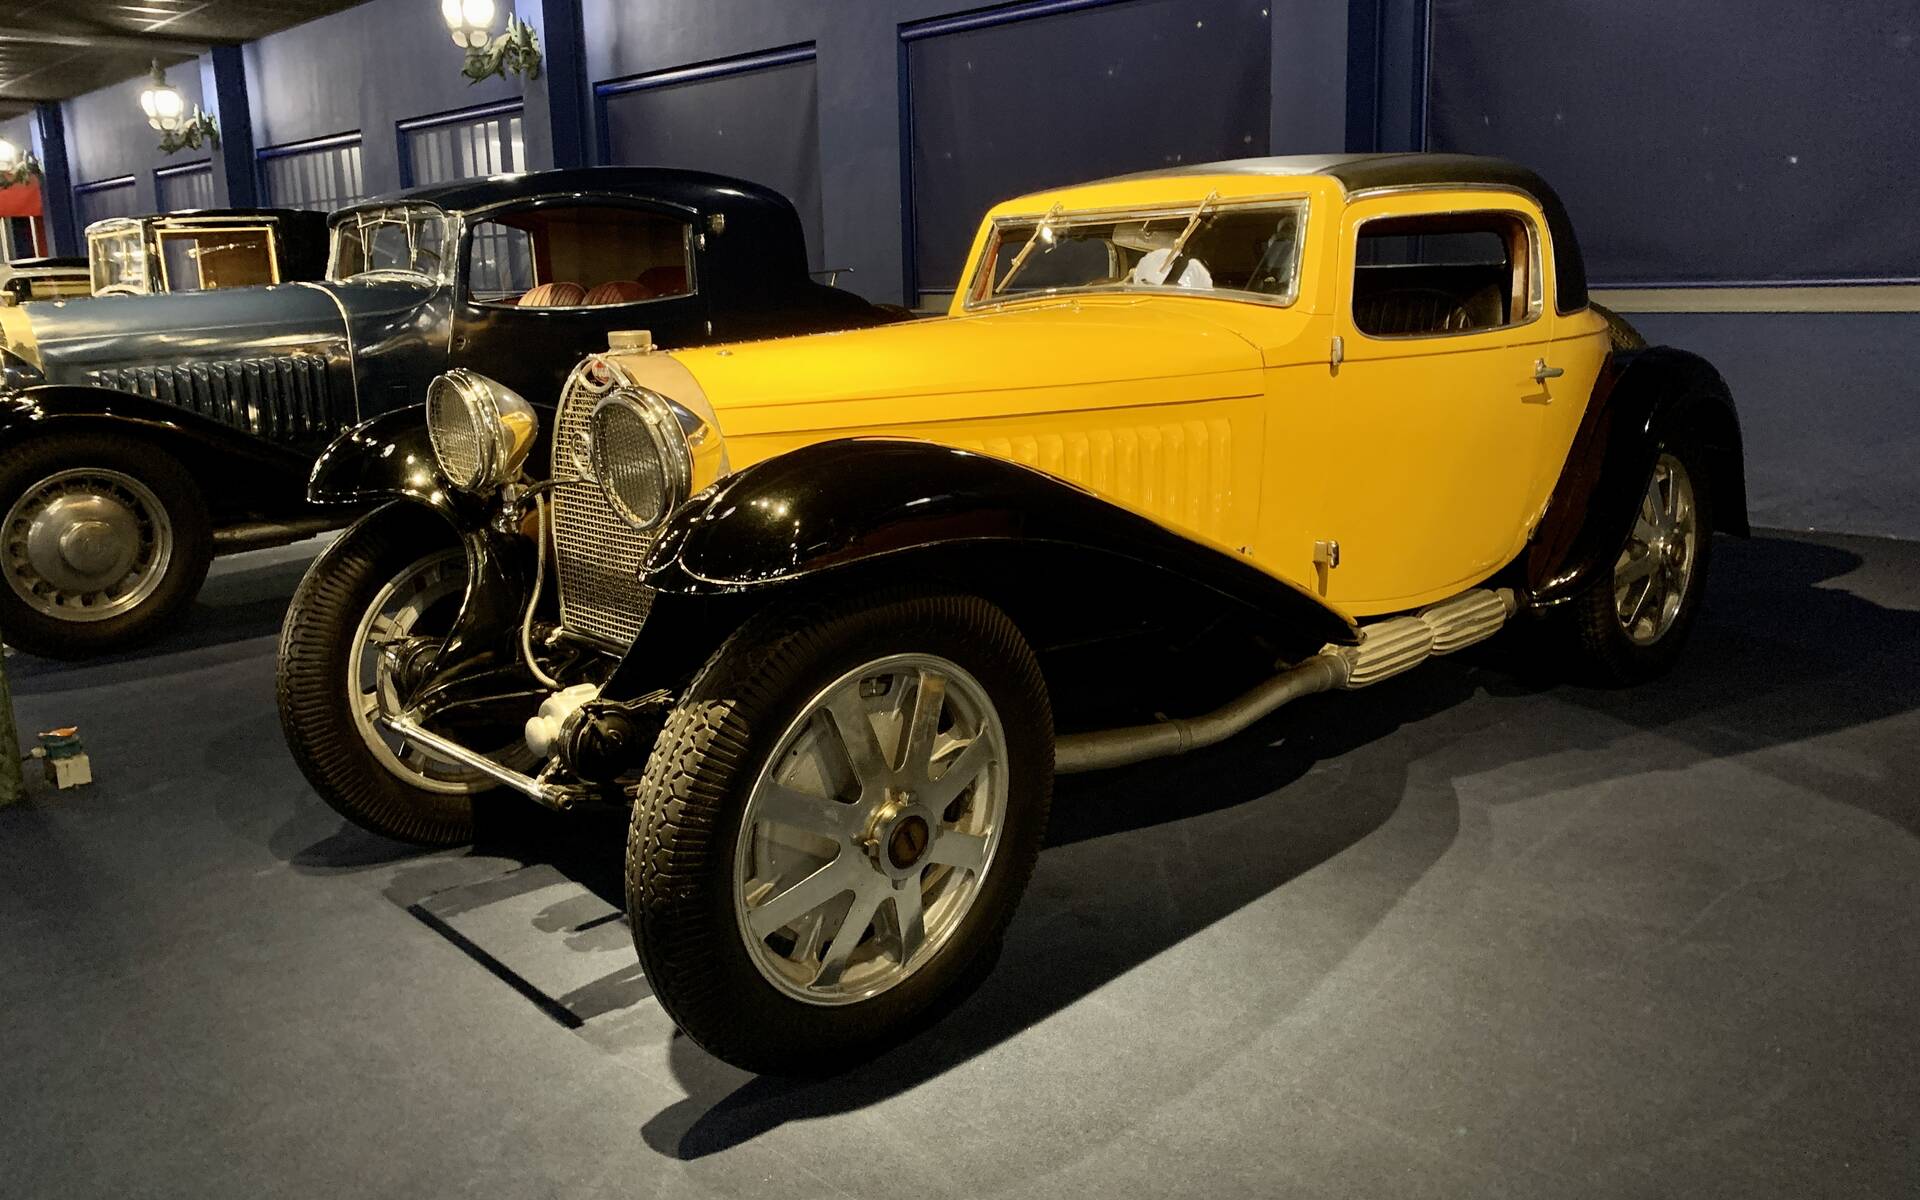 En photos : une centaine de Bugatti réunies dans un même musée 503100-en-photos-des-dizaines-de-bugatti-reunies-dans-un-meme-musee